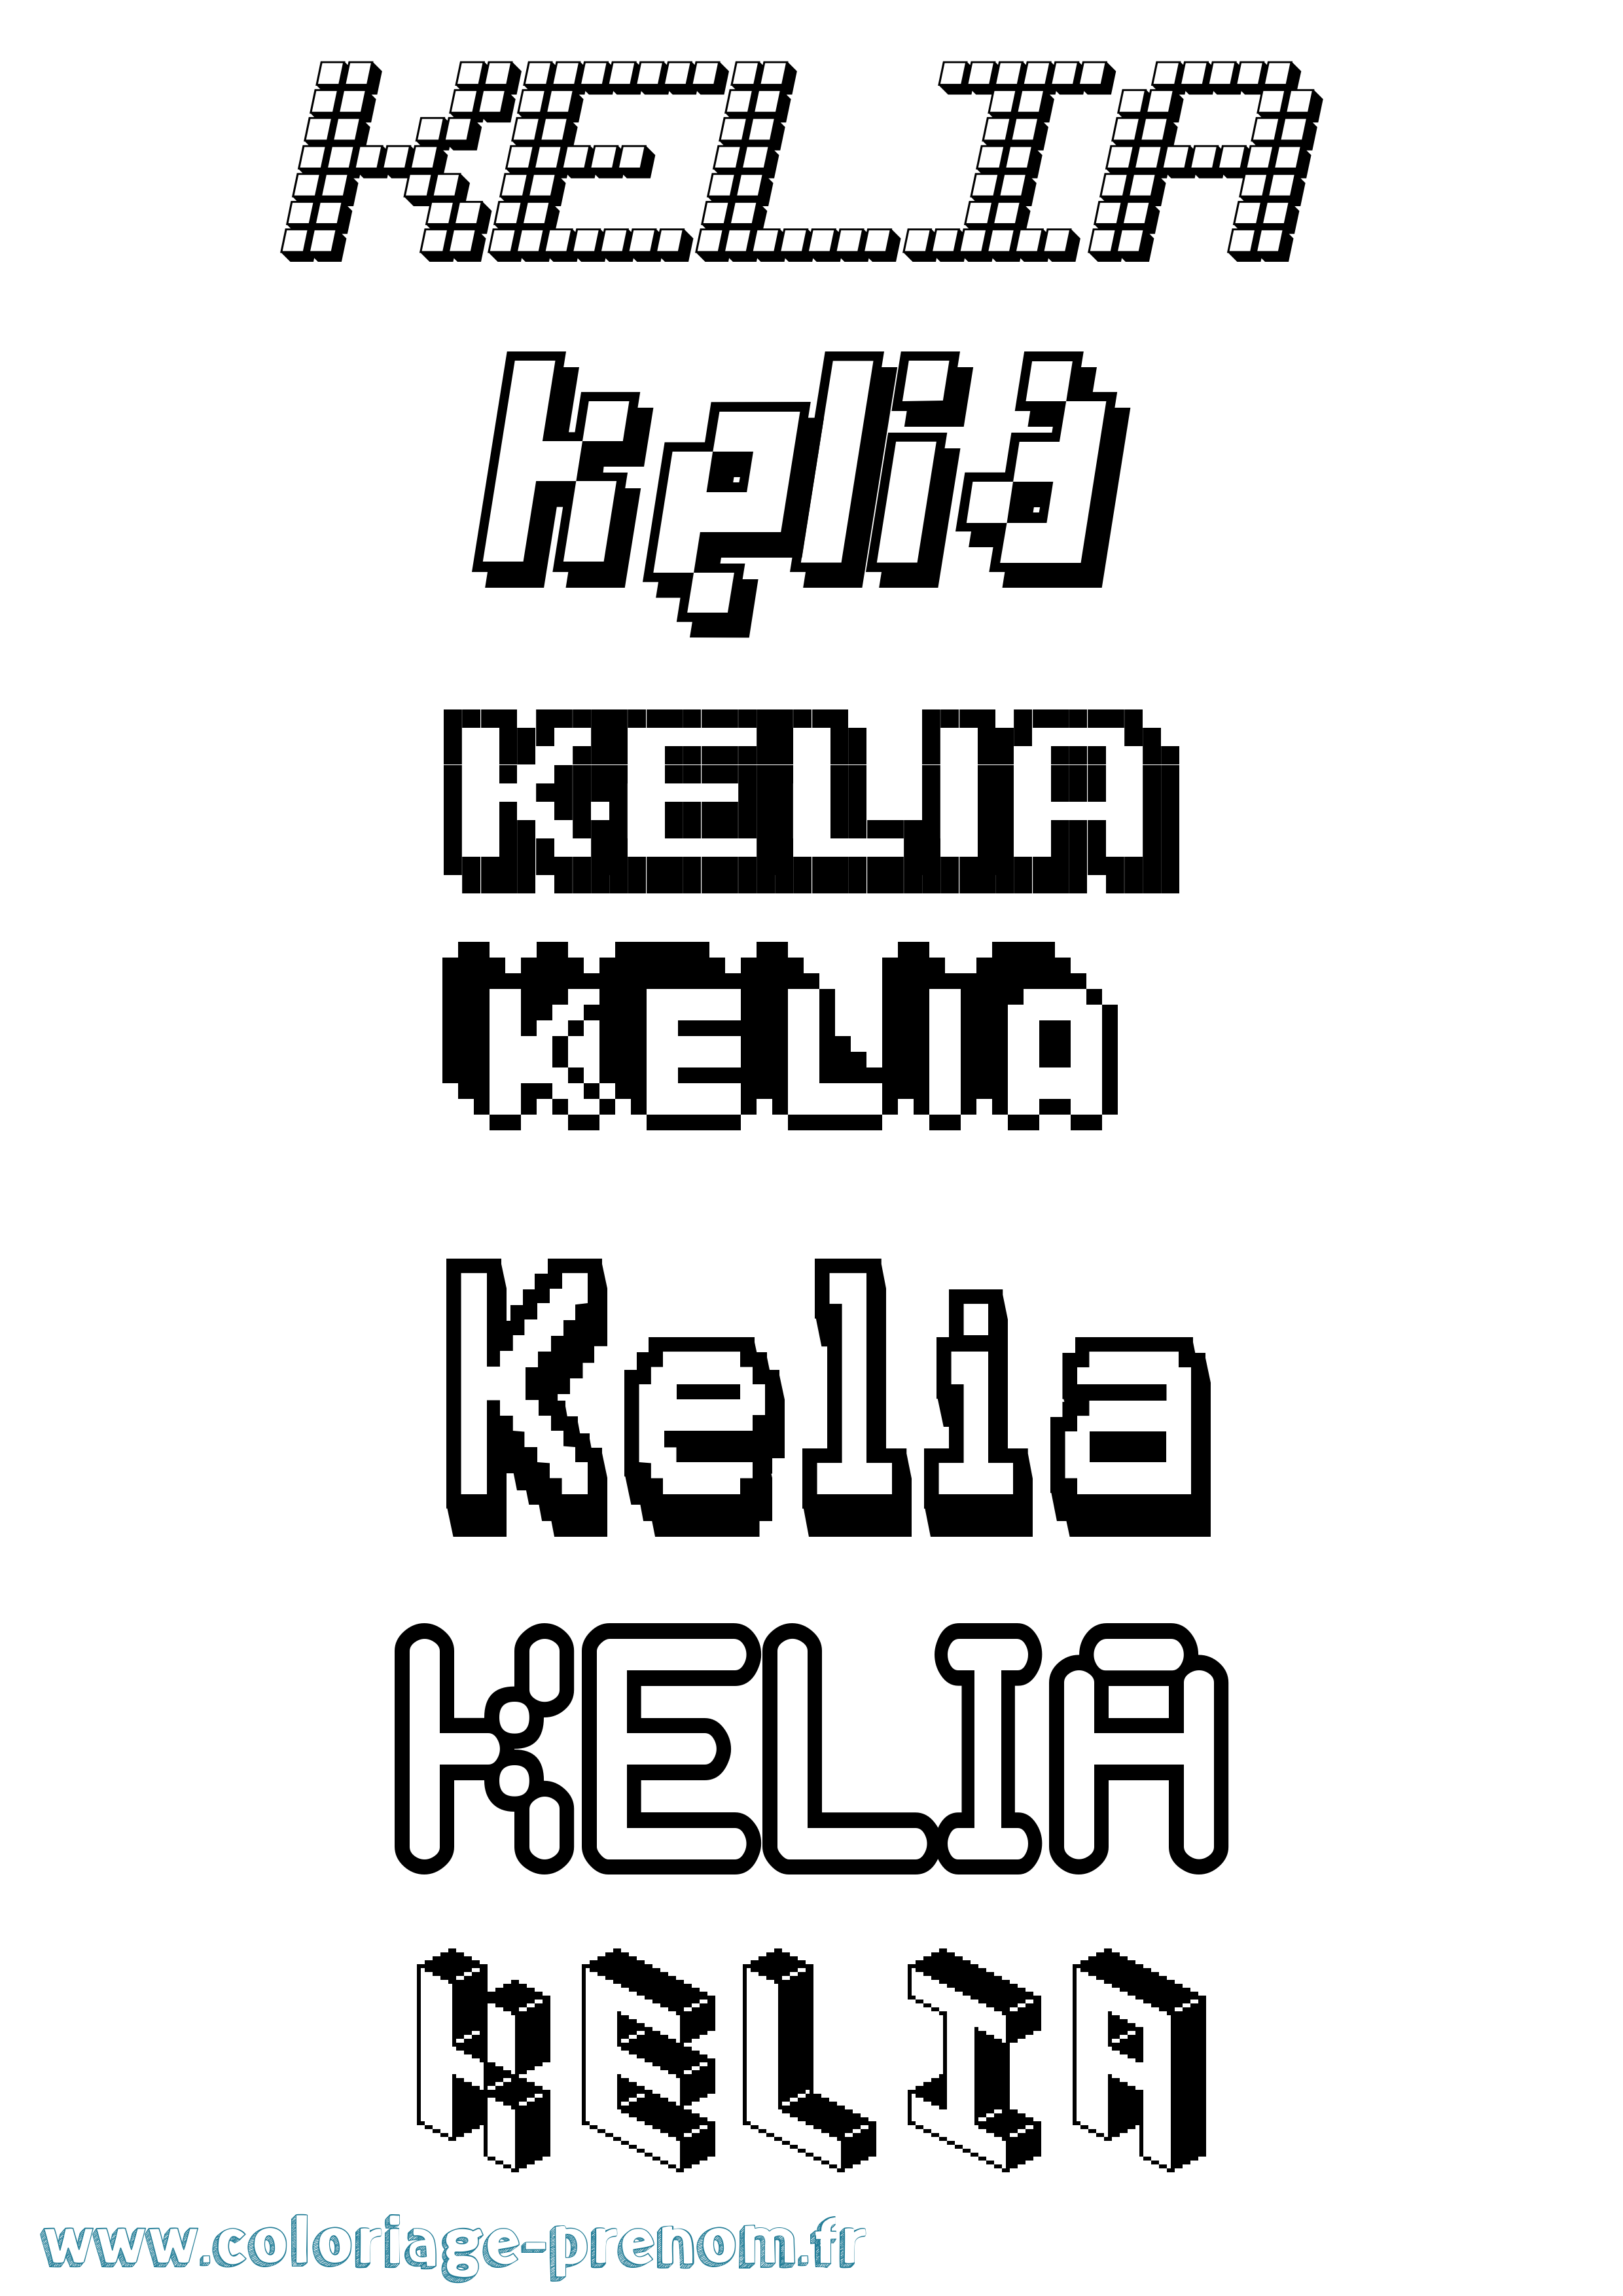 Coloriage prénom Kelia Pixel